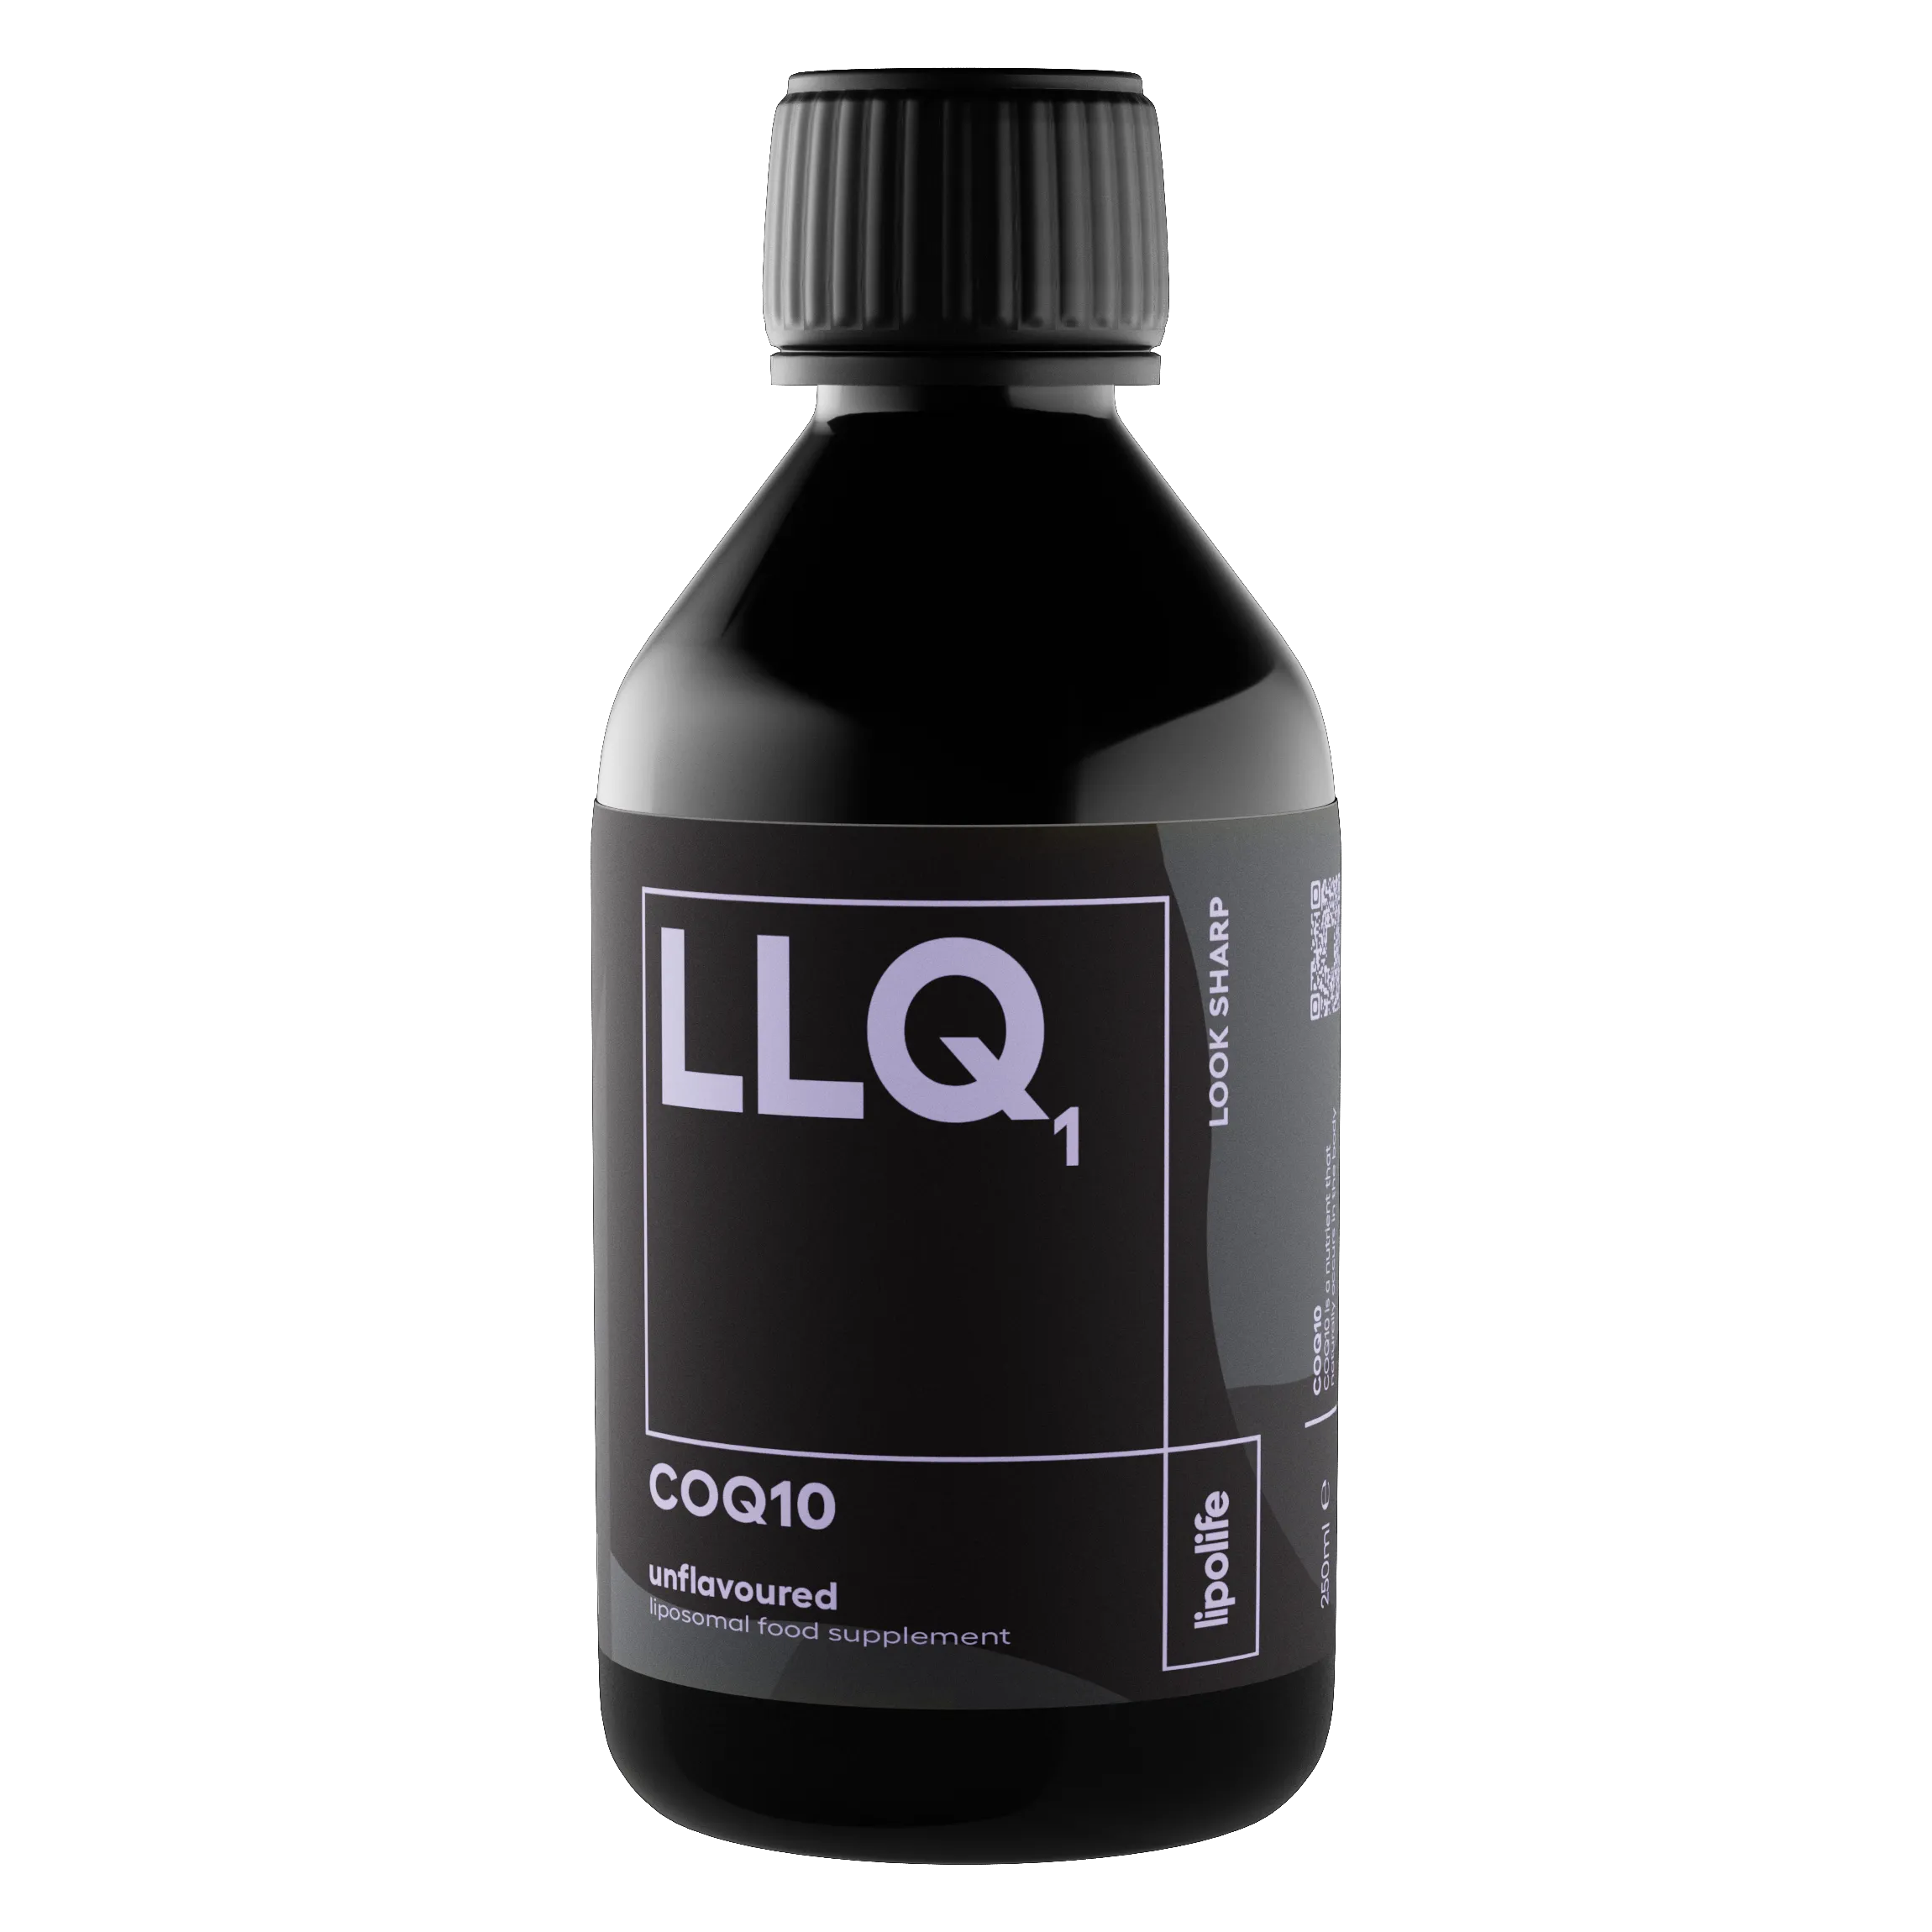 LLQ1 - течен и липозомен COQ10, без вкус